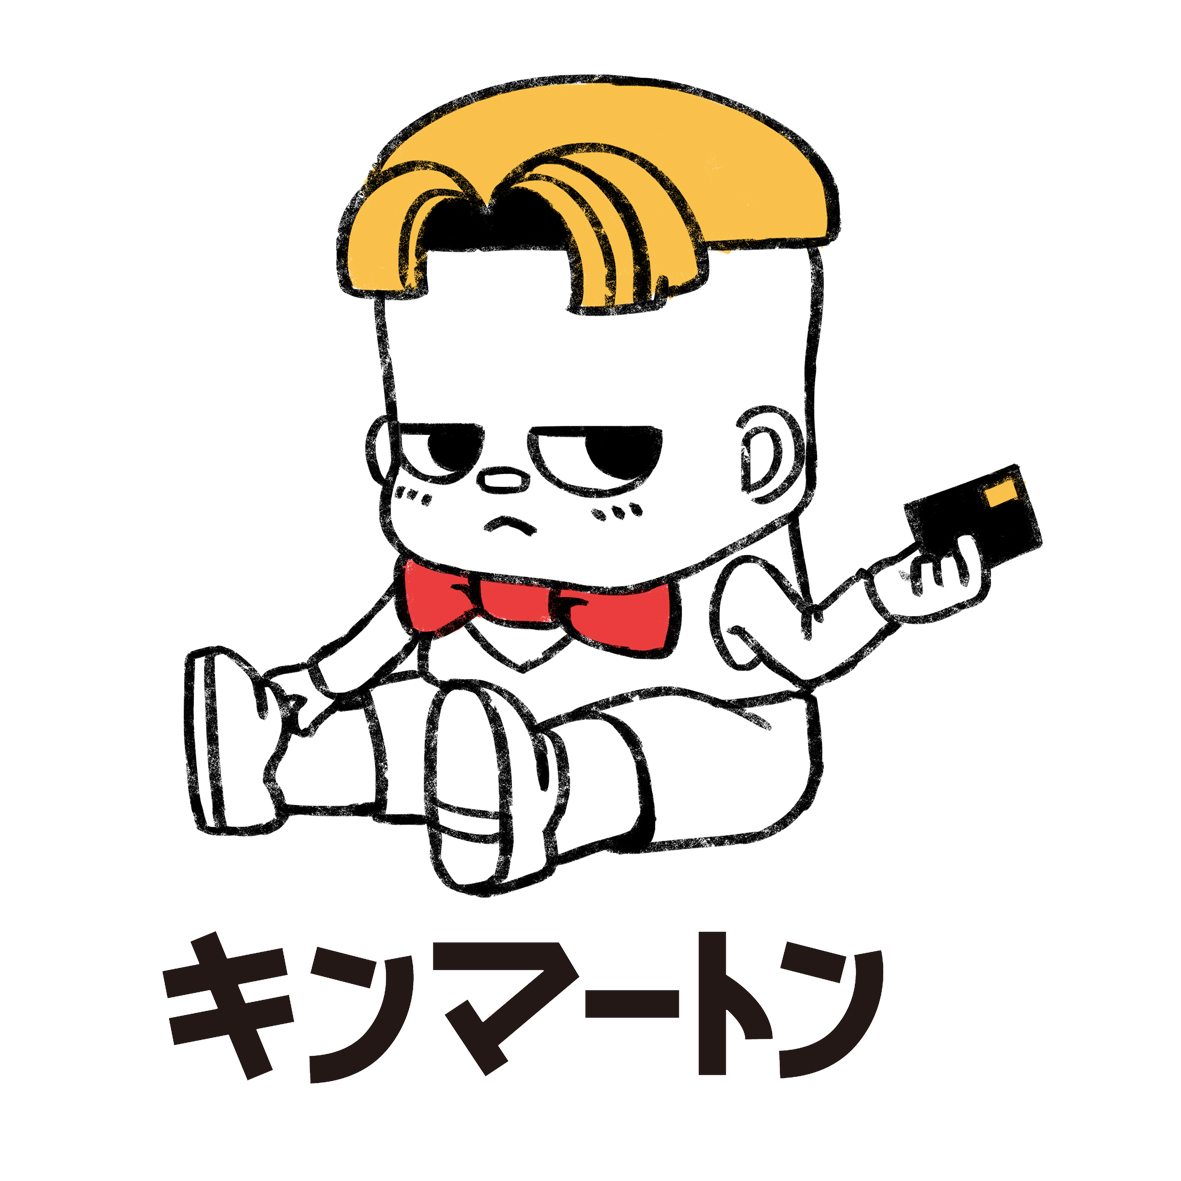 KINT恤 金馬桶 KINMATON 東映 搞笑漫畫 東映AG 日系服飾 日本品牌 日本漫畫 日系漫畫 漫畫 IP T恤